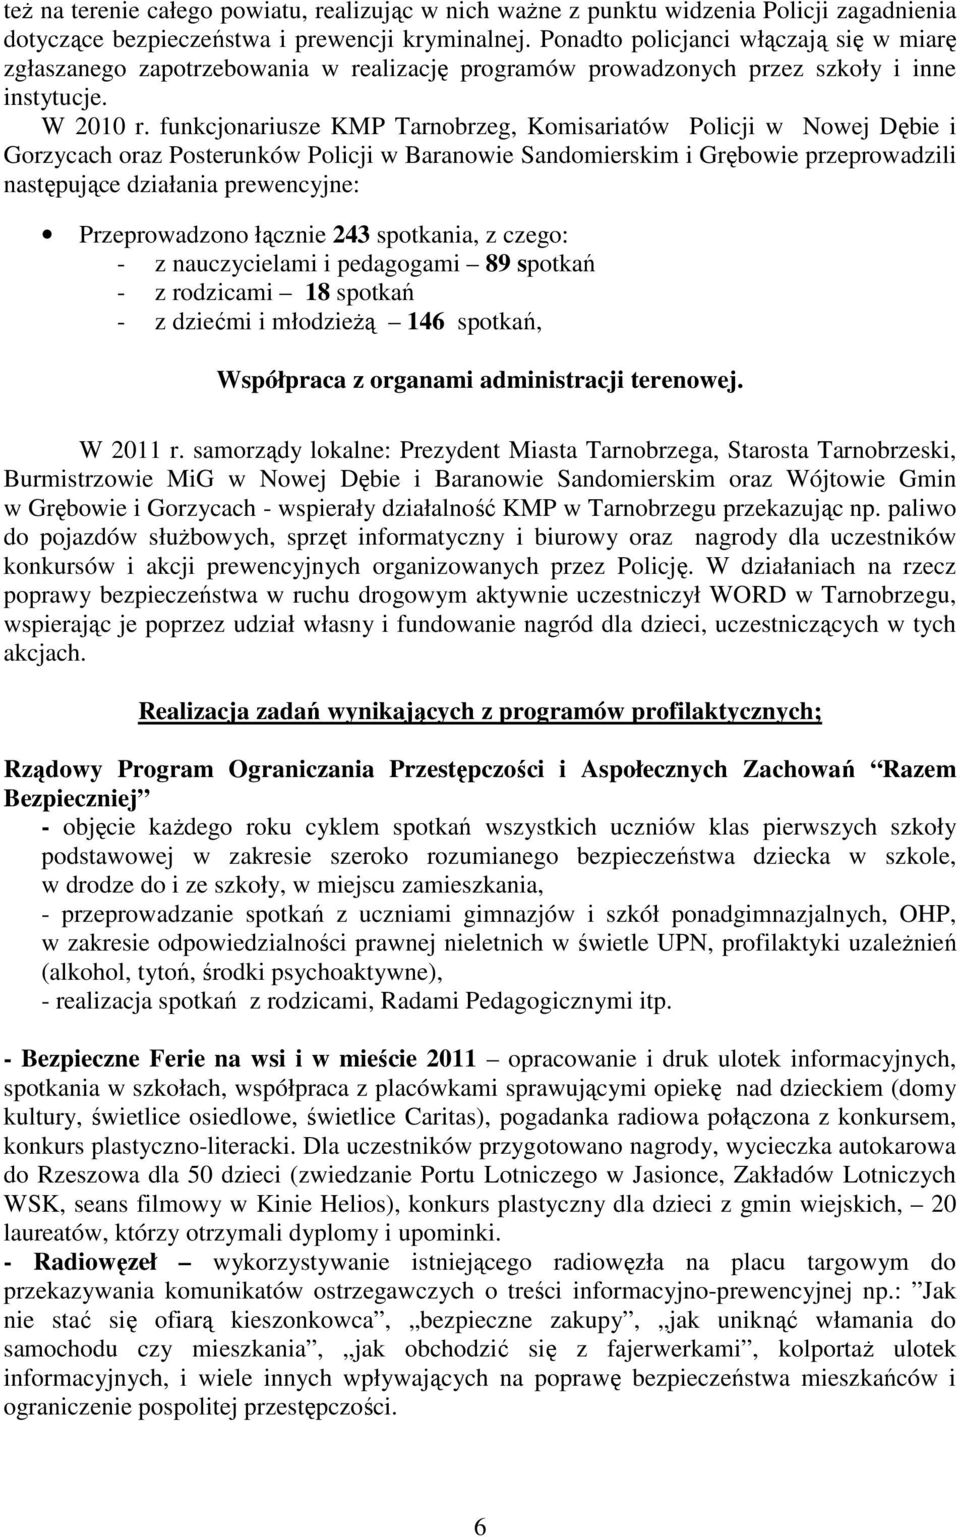 funkcjonariusze KMP Tarnobrzeg, Komisariatów Policji w Nowej Dębie i Gorzycach oraz Posterunków Policji w Baranowie Sandomierskim i Grębowie przeprowadzili następujące działania prewencyjne: